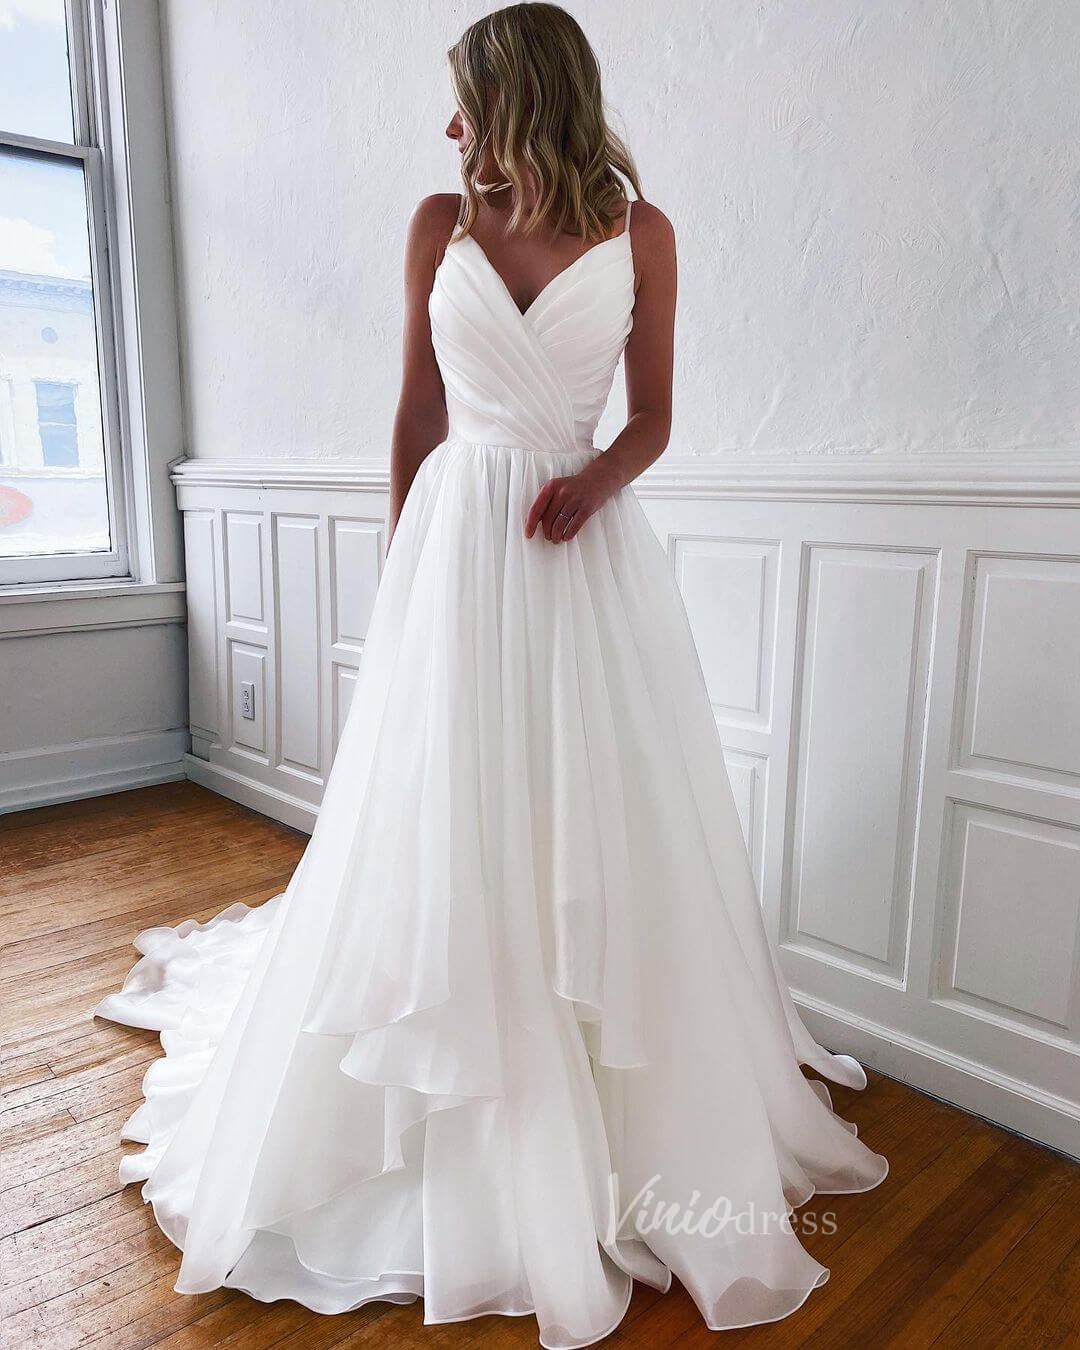 Ruffled Silky Chiffon Wedding Dress Spaghetti Strap VW1141-wedding dresses-Viniodress-Ivory-Custom Size-Viniodress